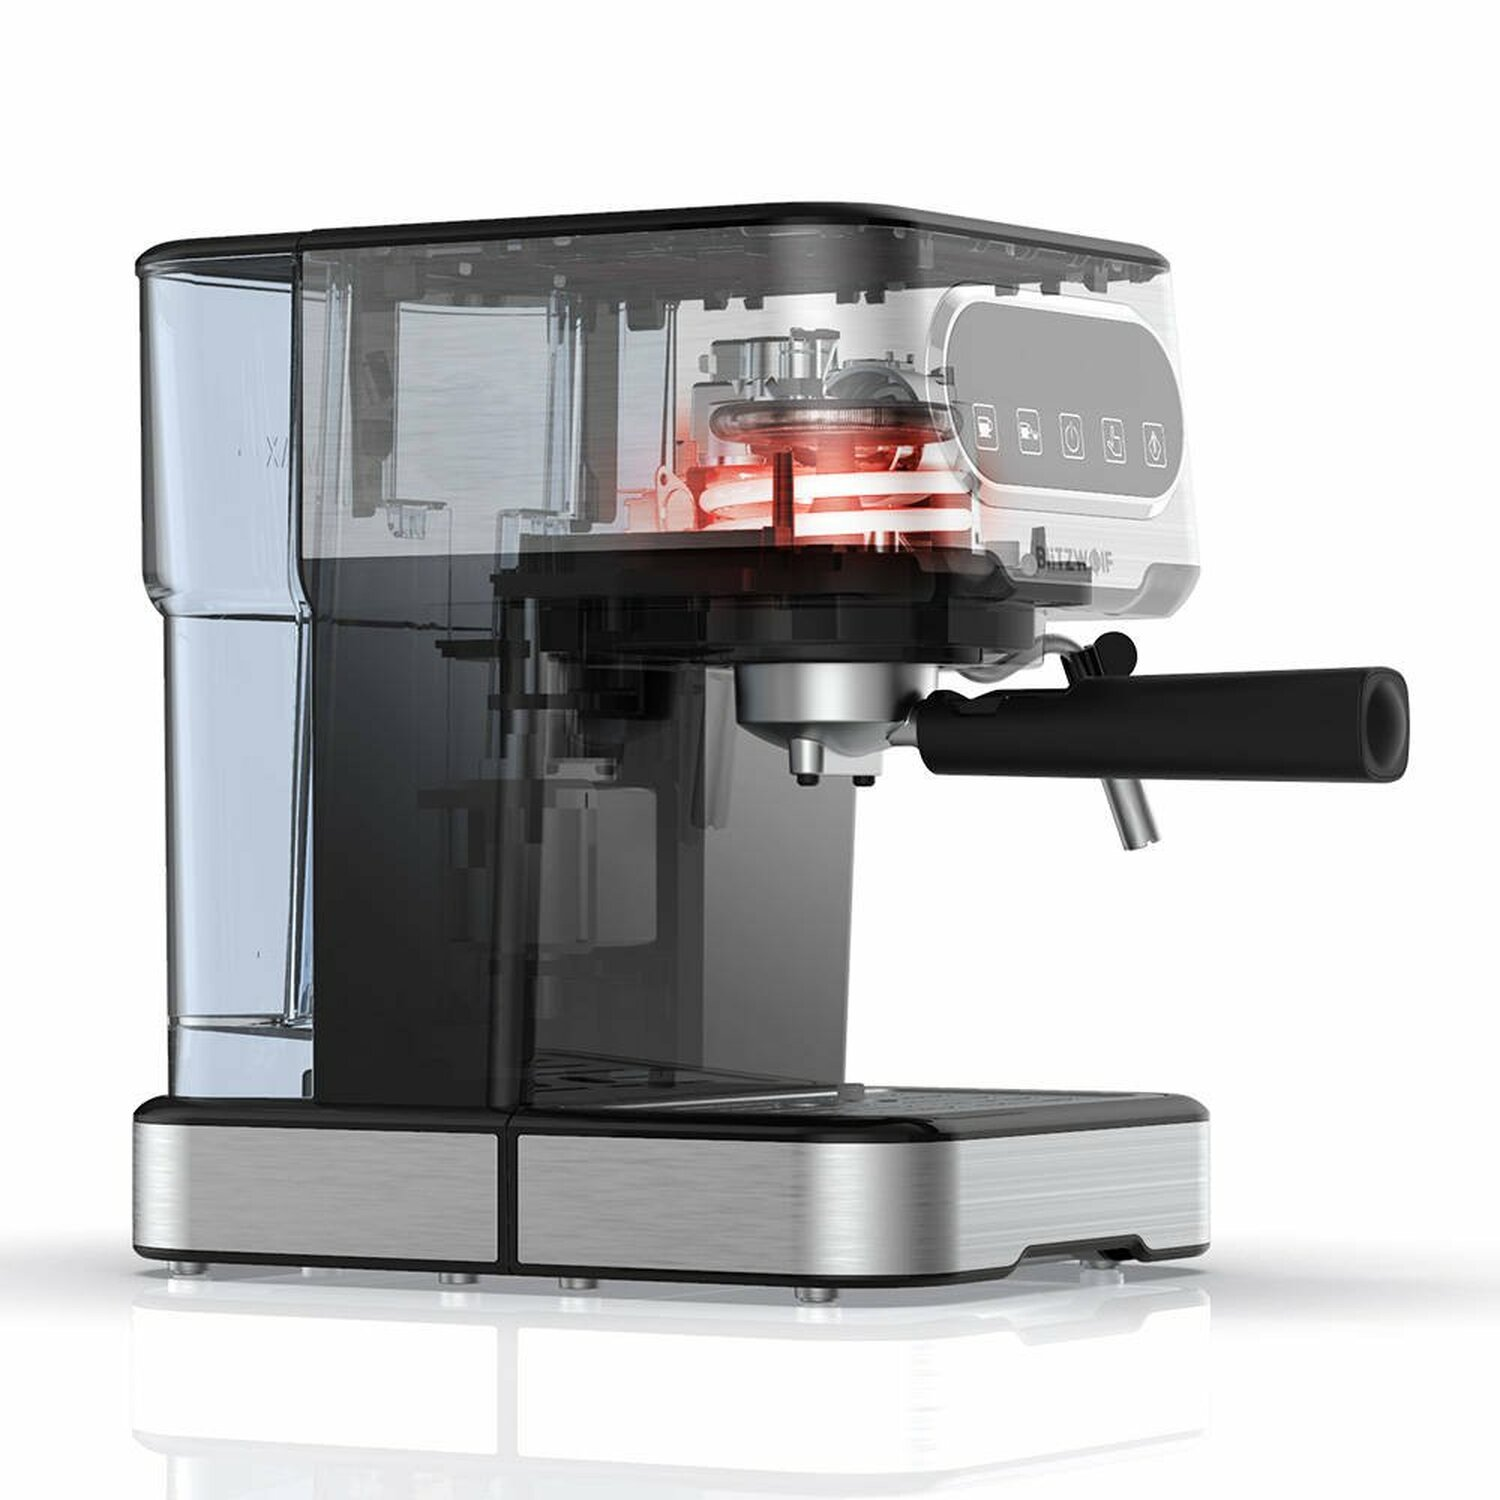 Espressomaschine Silber BW-CMM2 BLITZWOLF